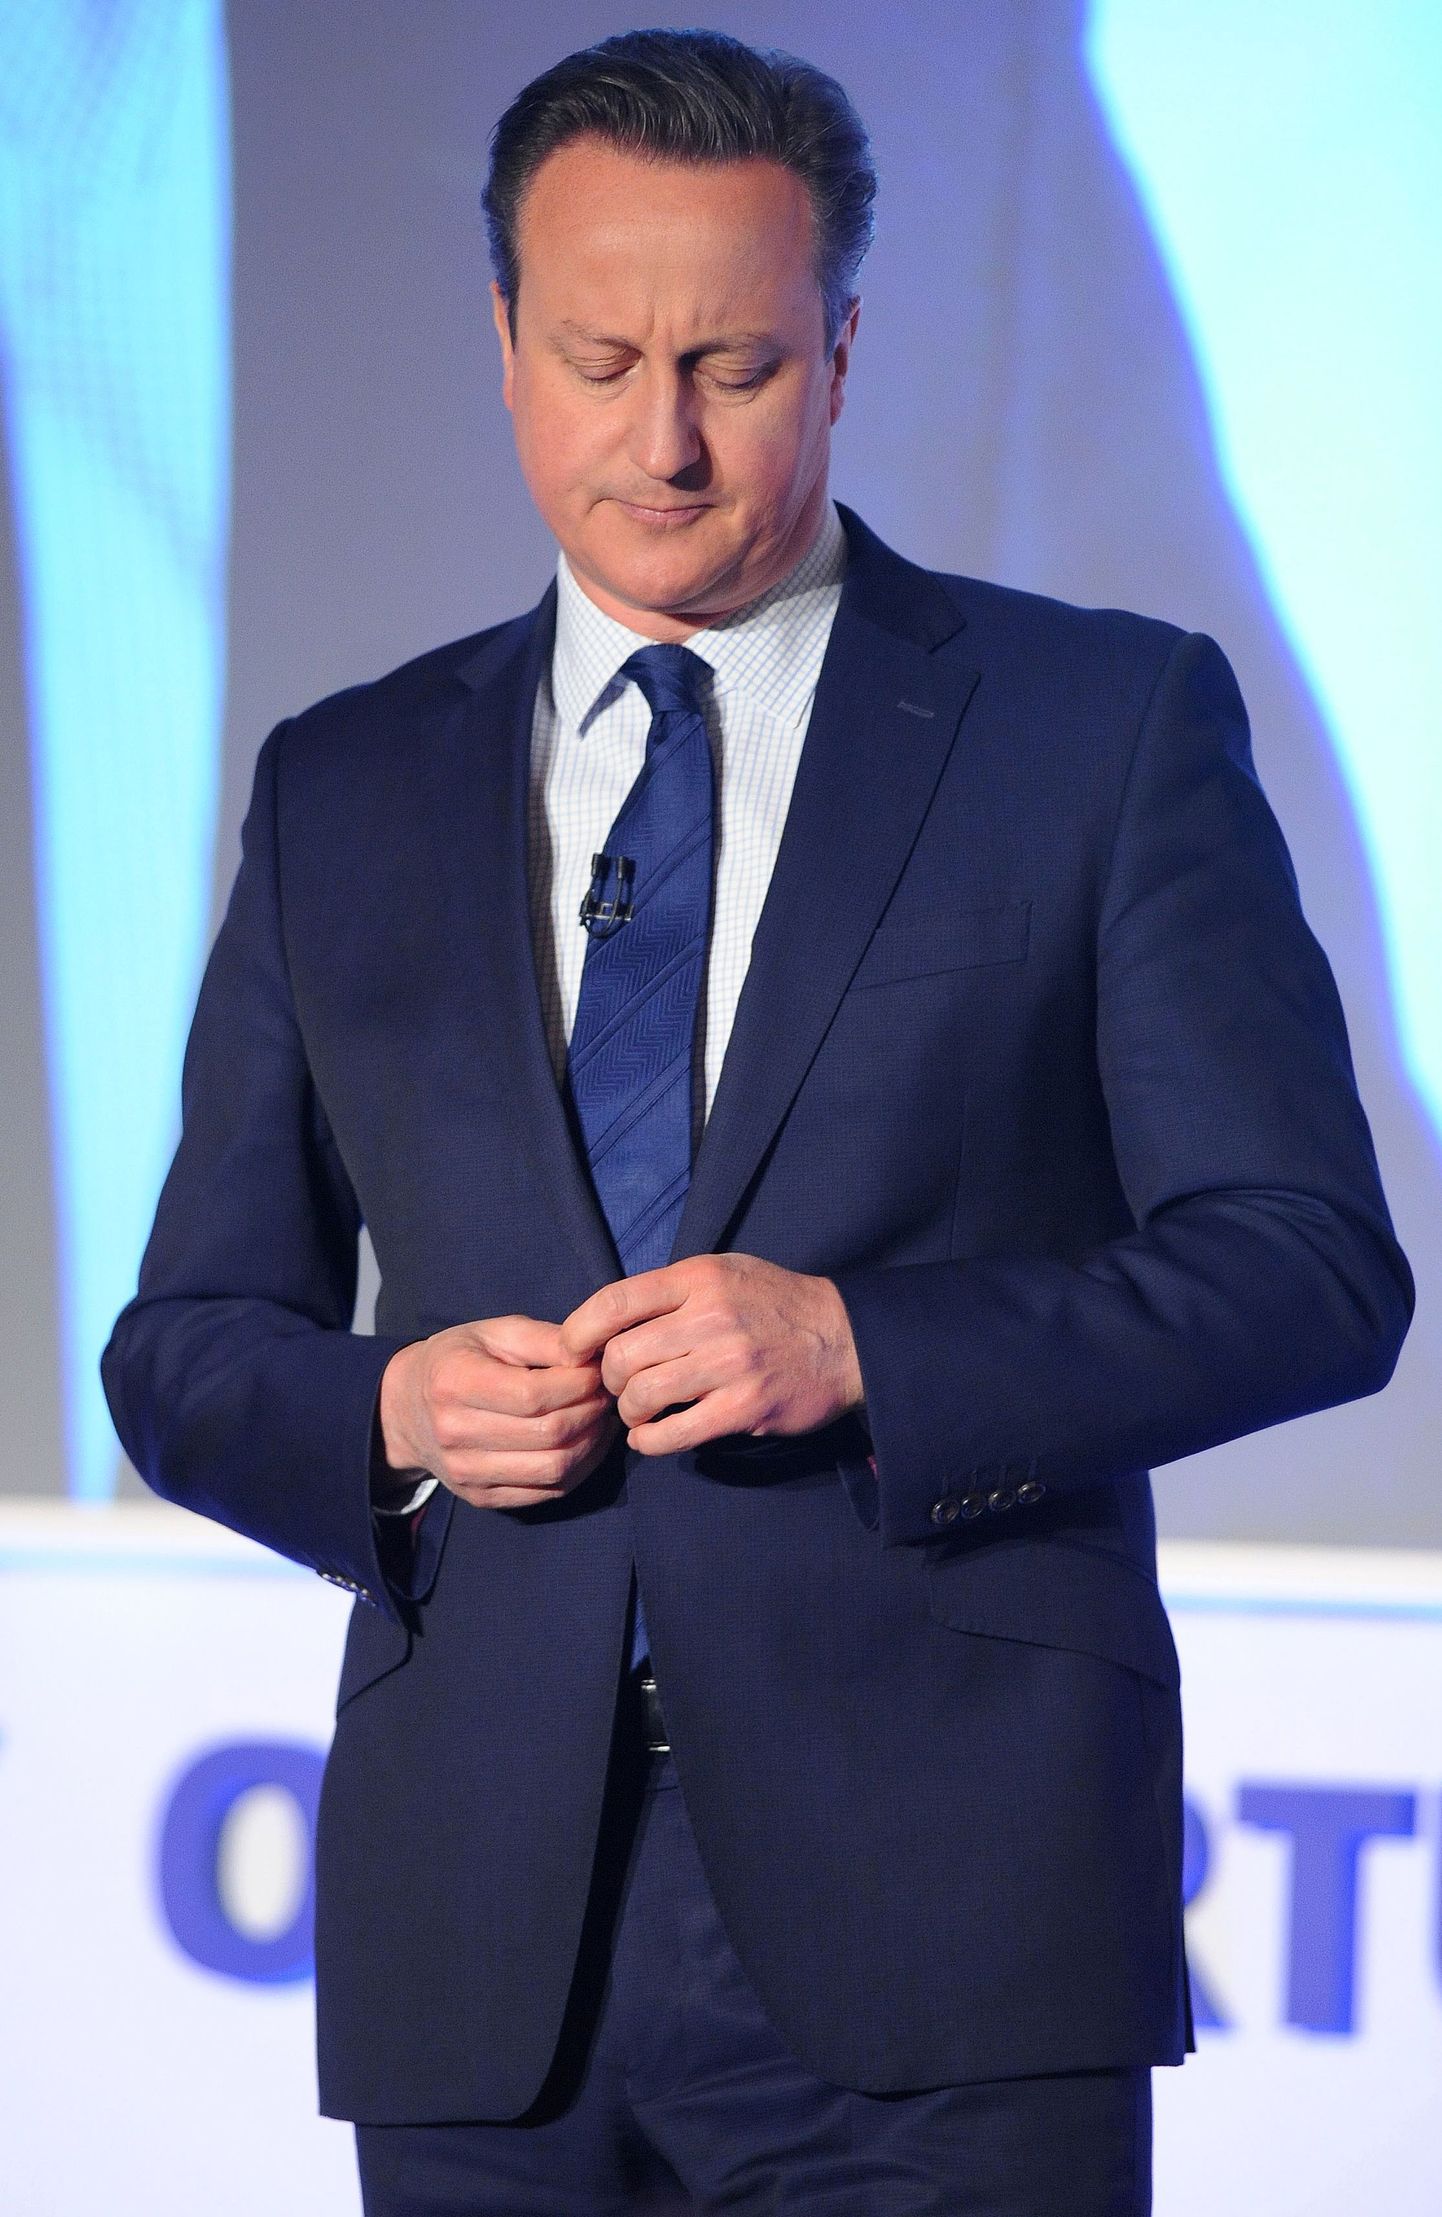 Briti peaminister David Cameron laupäeval Konservatiivse partei kevadfoorumil.